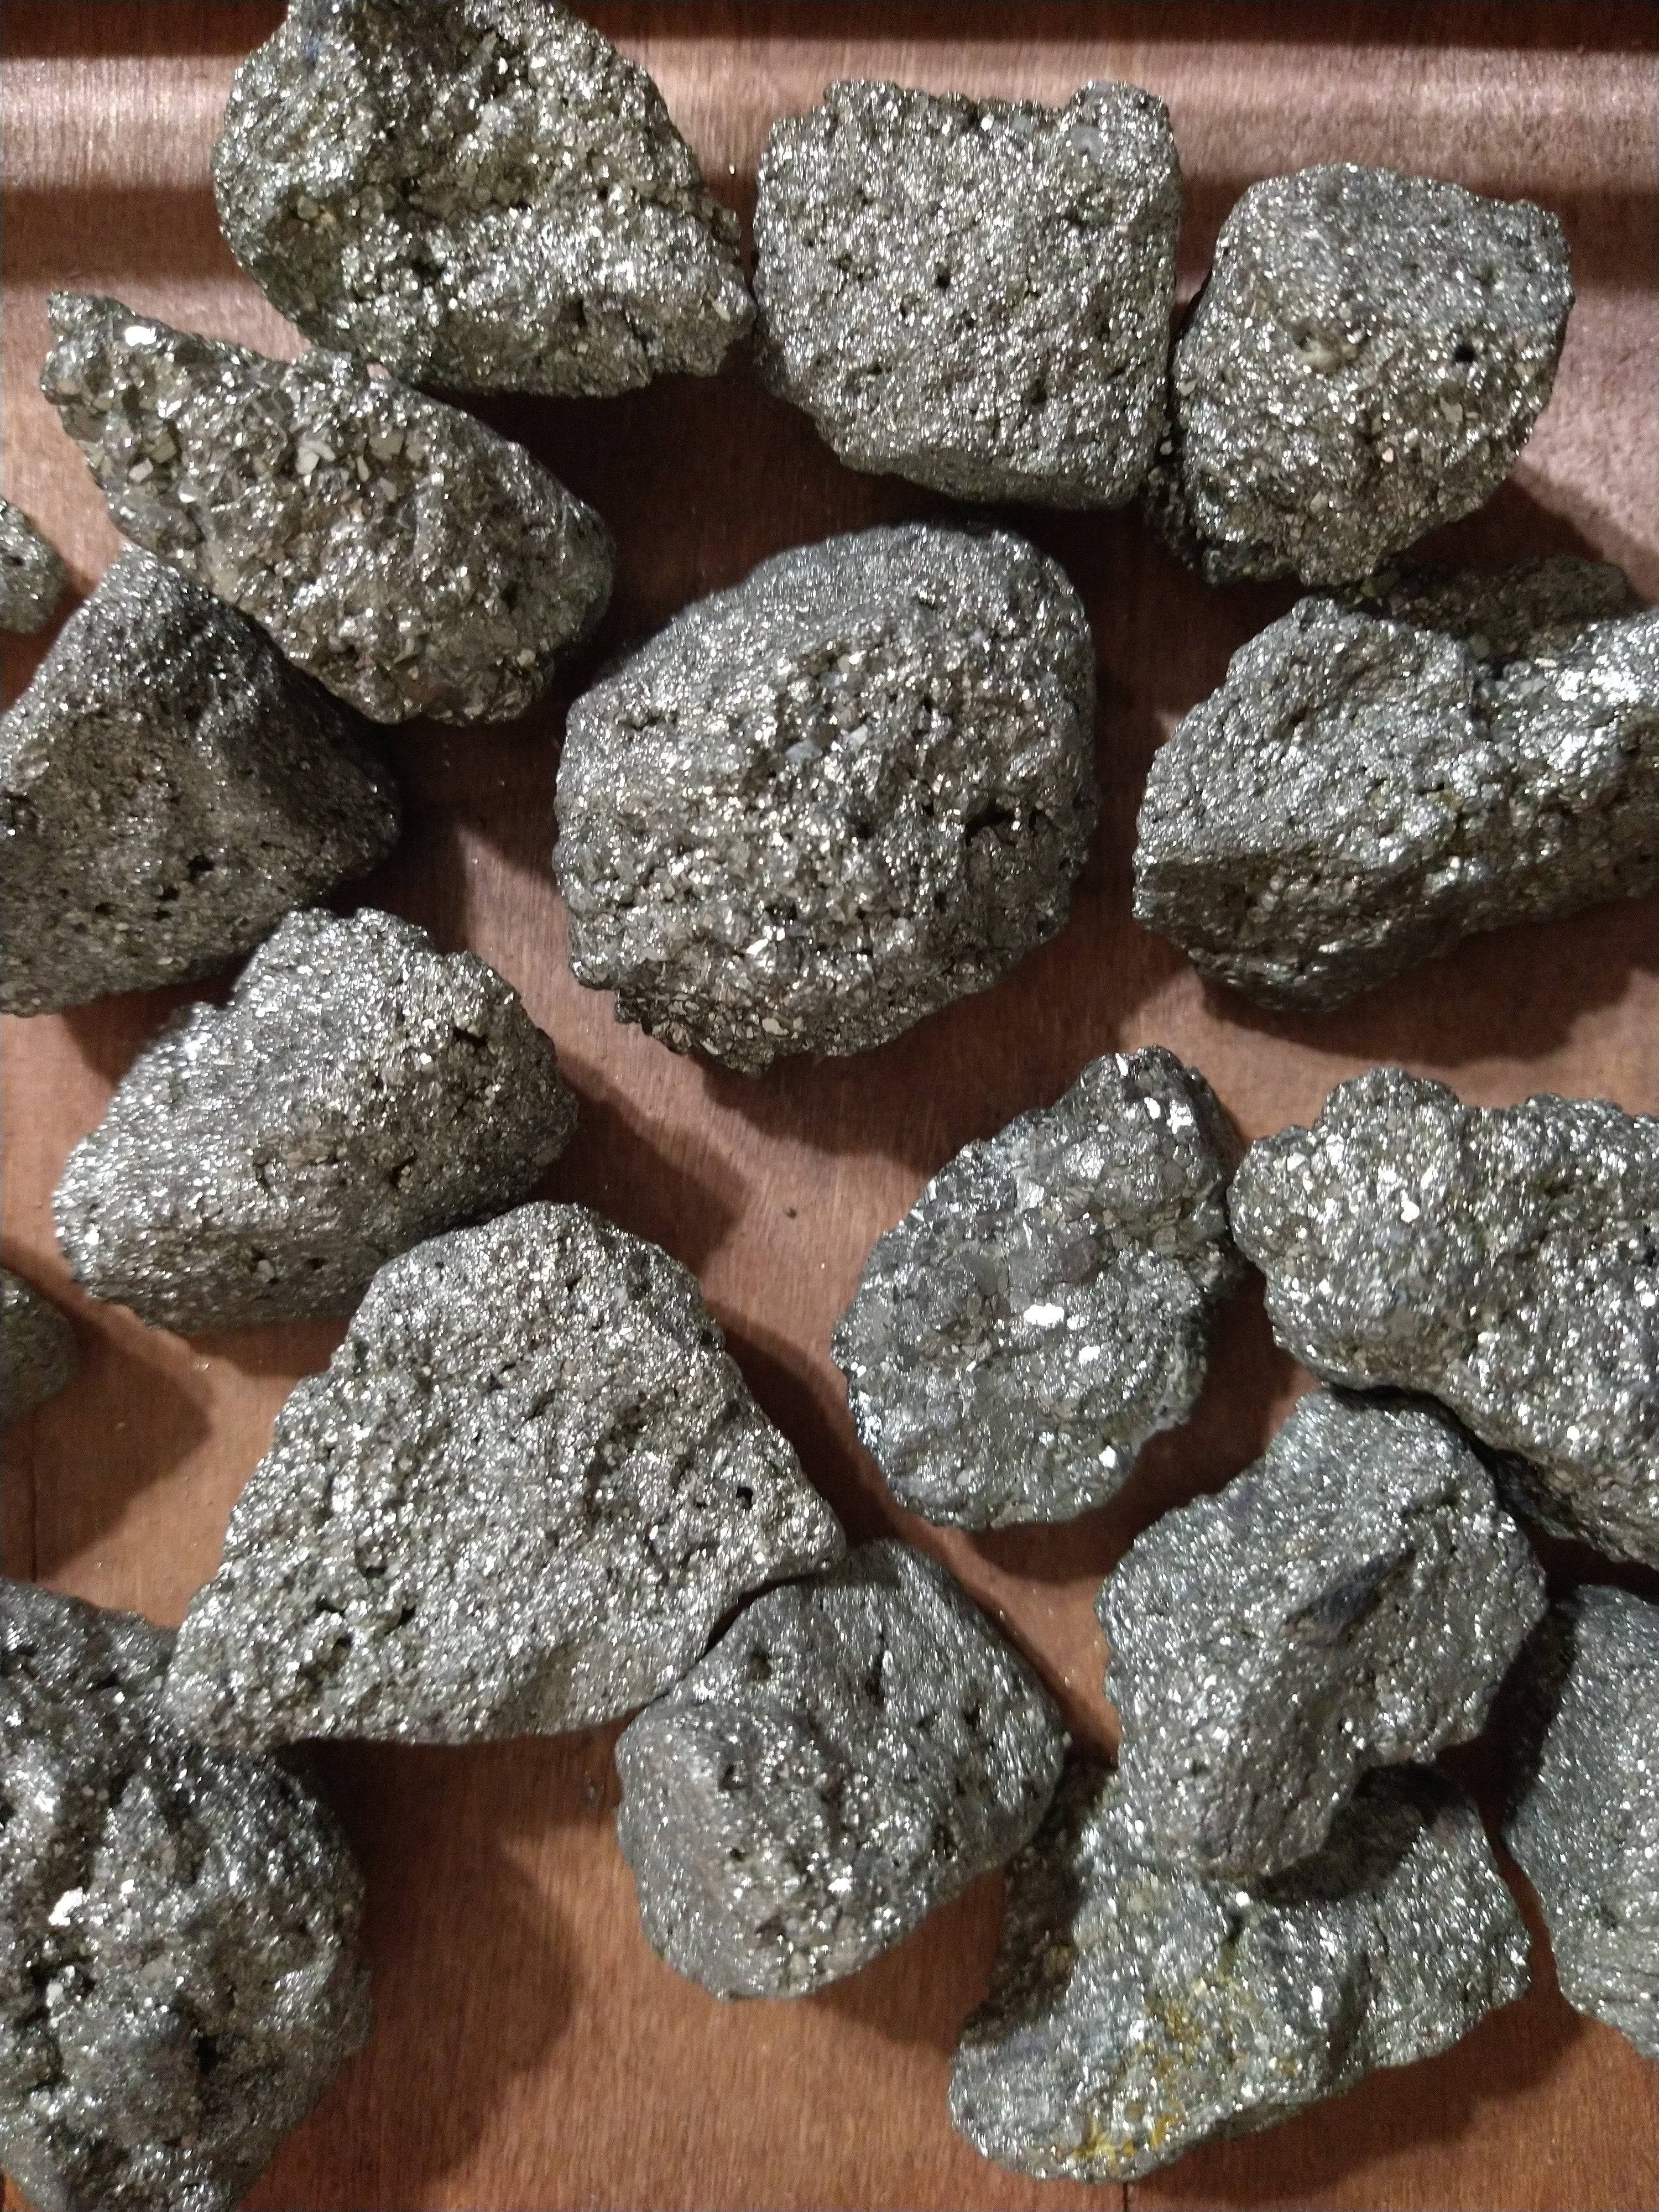 Pyrite Nugget - Edy's Treasures